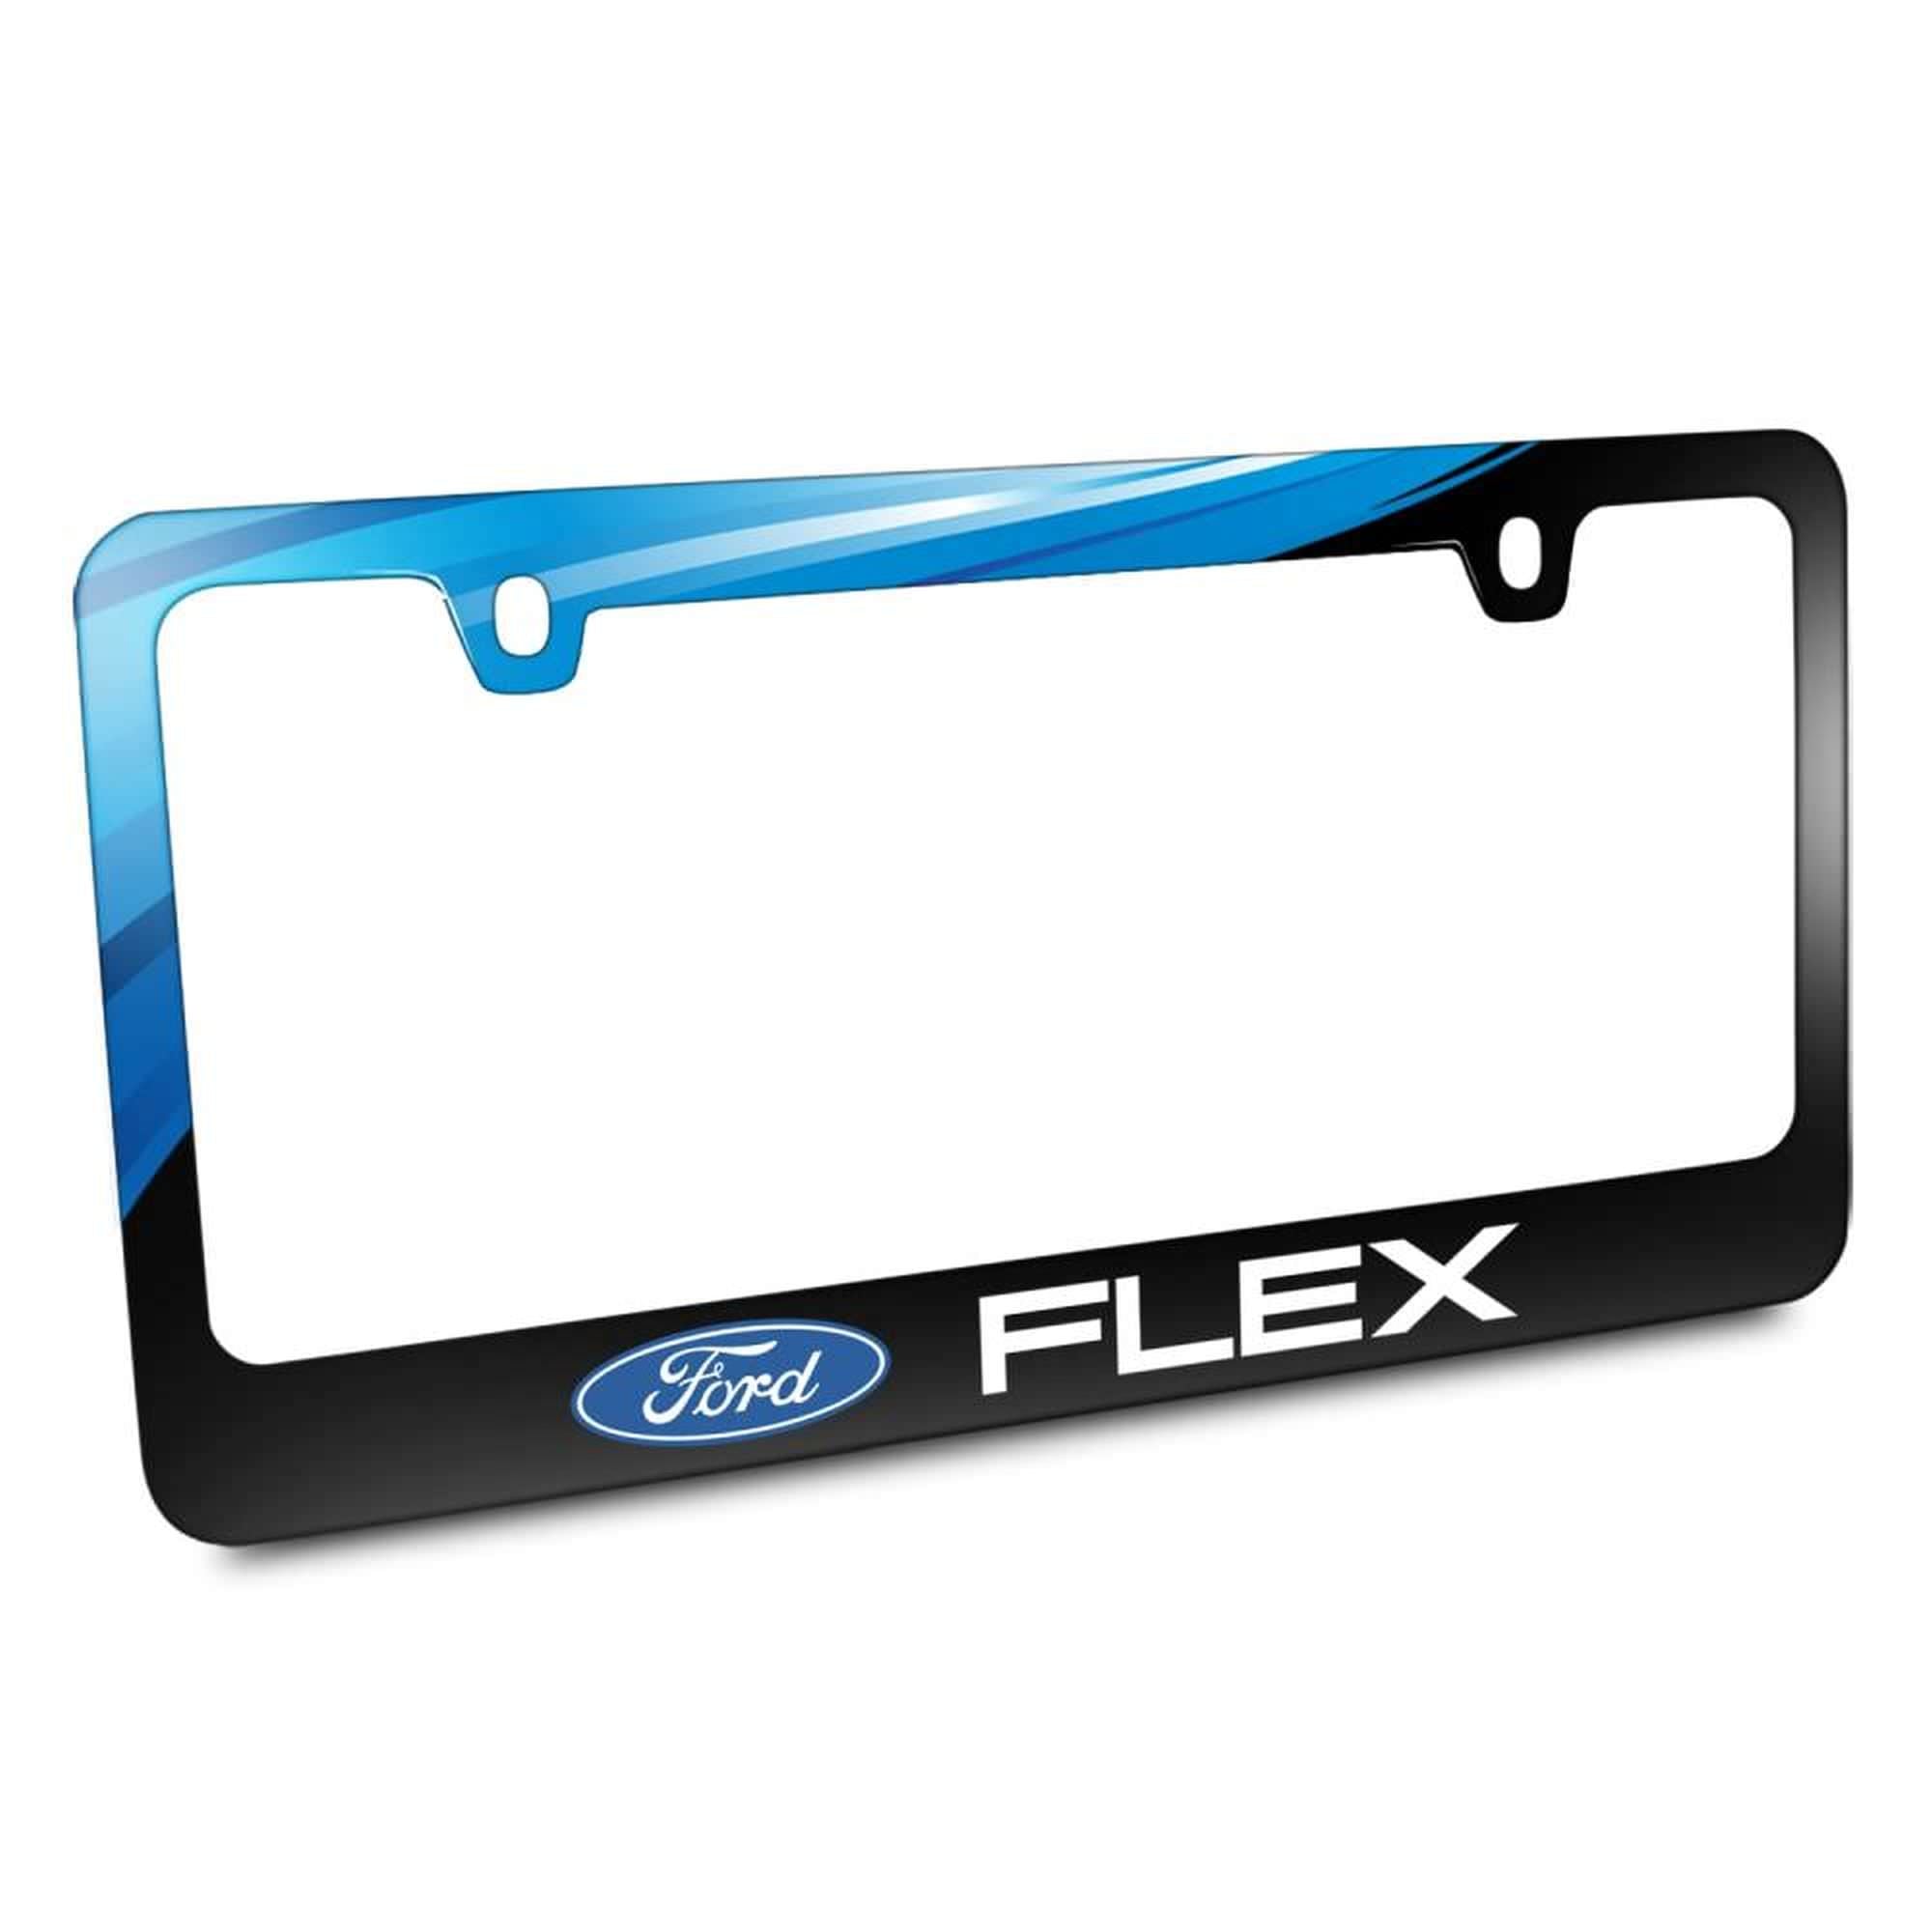 Ford,Flex,License Plate Frame